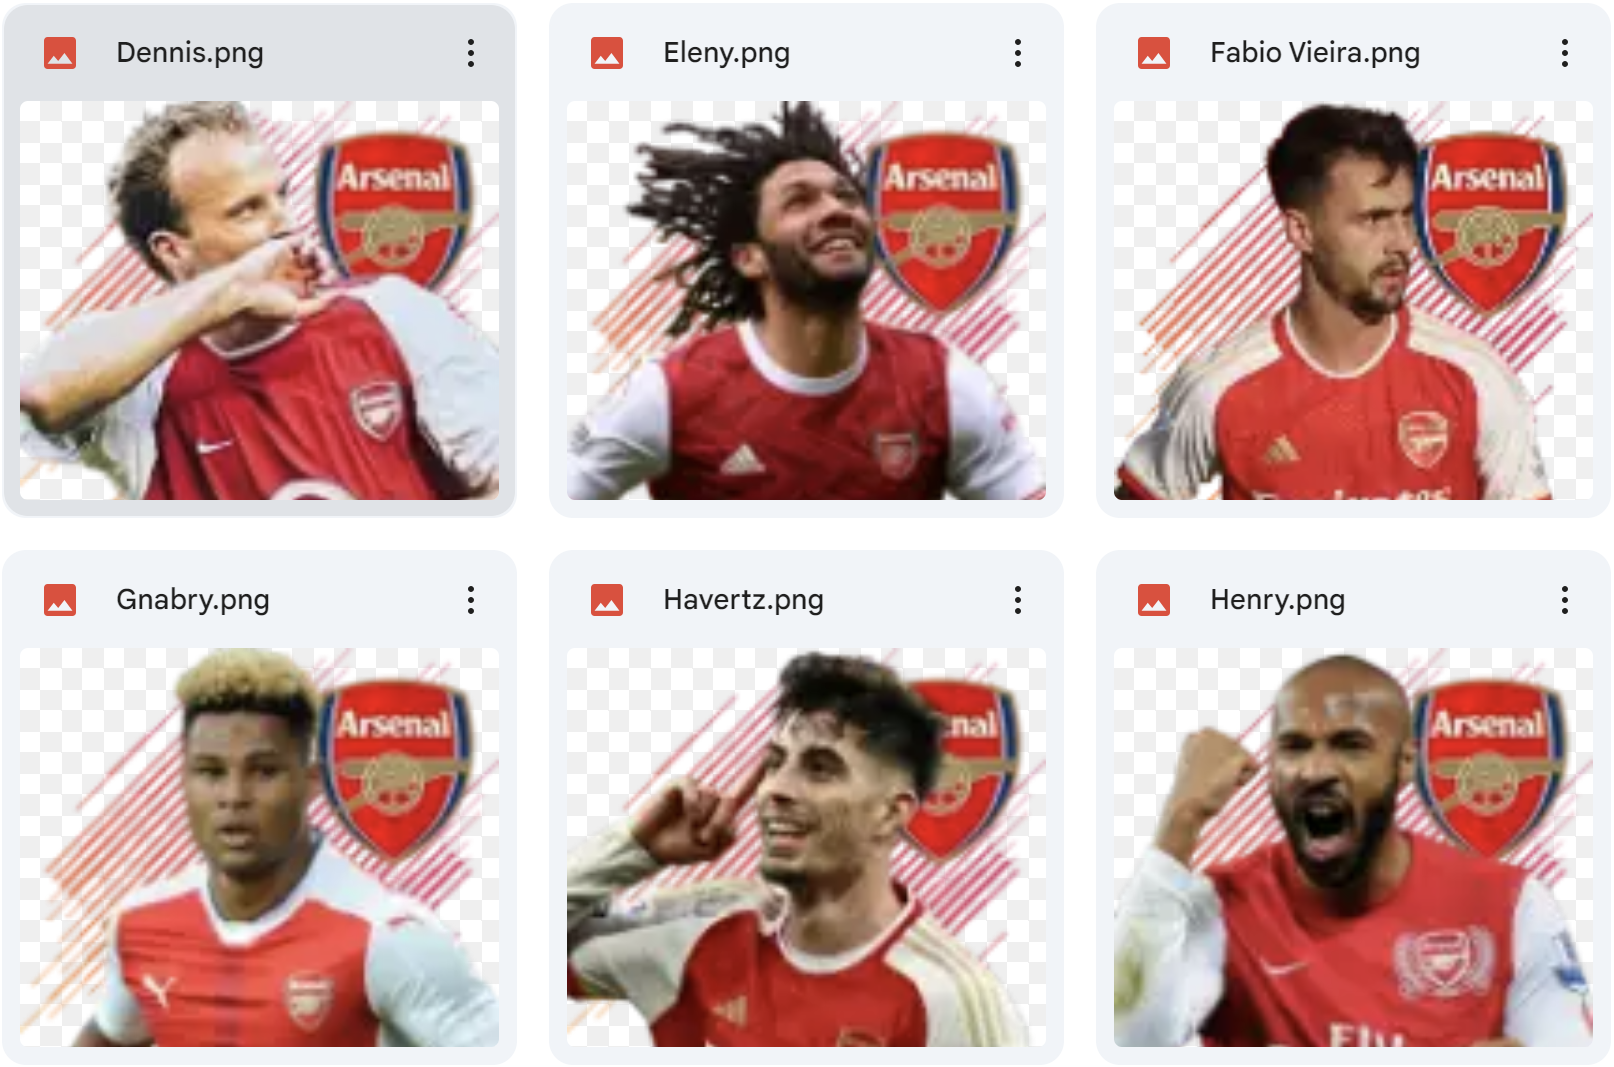 Miniface Fo4 team Arsenal cực chất với đội hình All Star